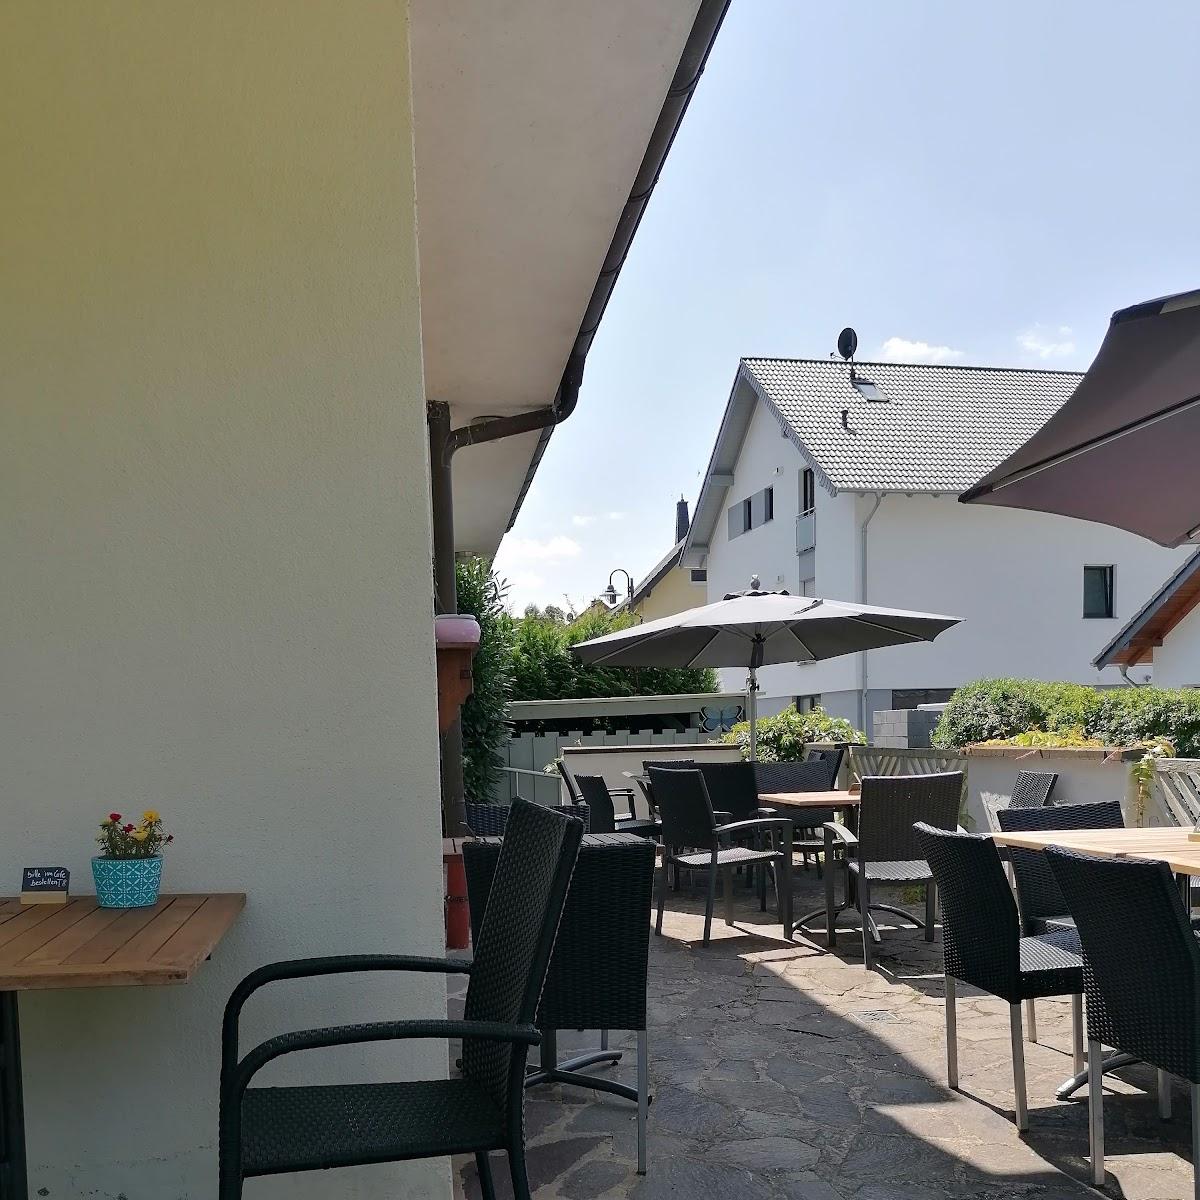 Restaurant "Hotel Vergissmeinnicht" in  Ellenz-Poltersdorf